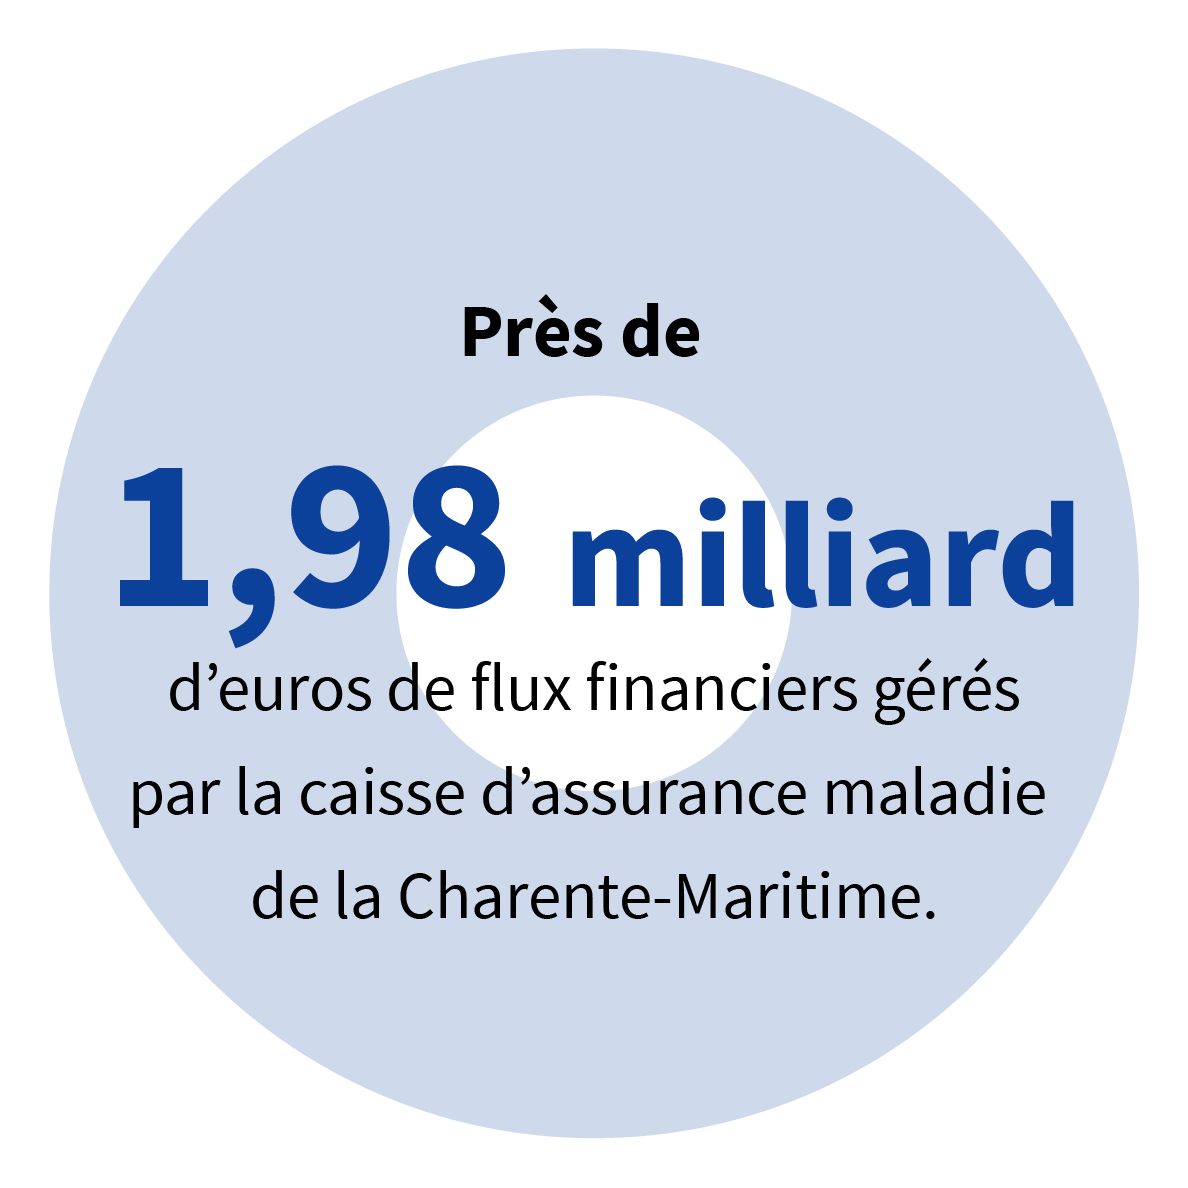 Près de 1,98 milliard d’euros de flux financiers gérés par la caisse d’assurance maladie de la Charente-Maritime.